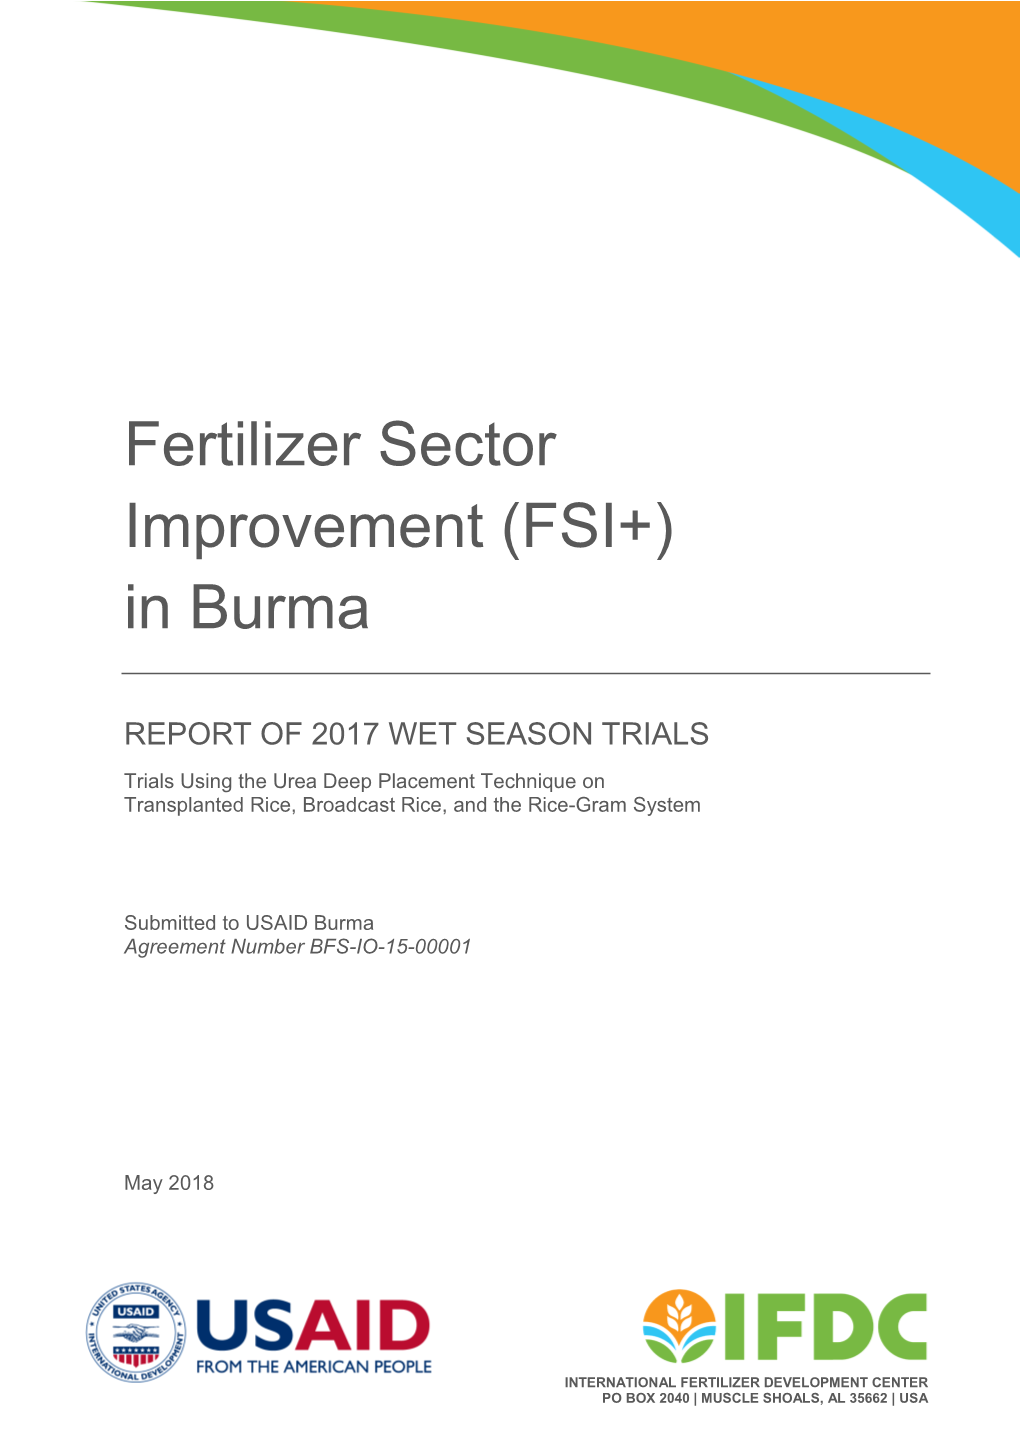 Fertilizer Sector Improvement (FSI+) in Burma